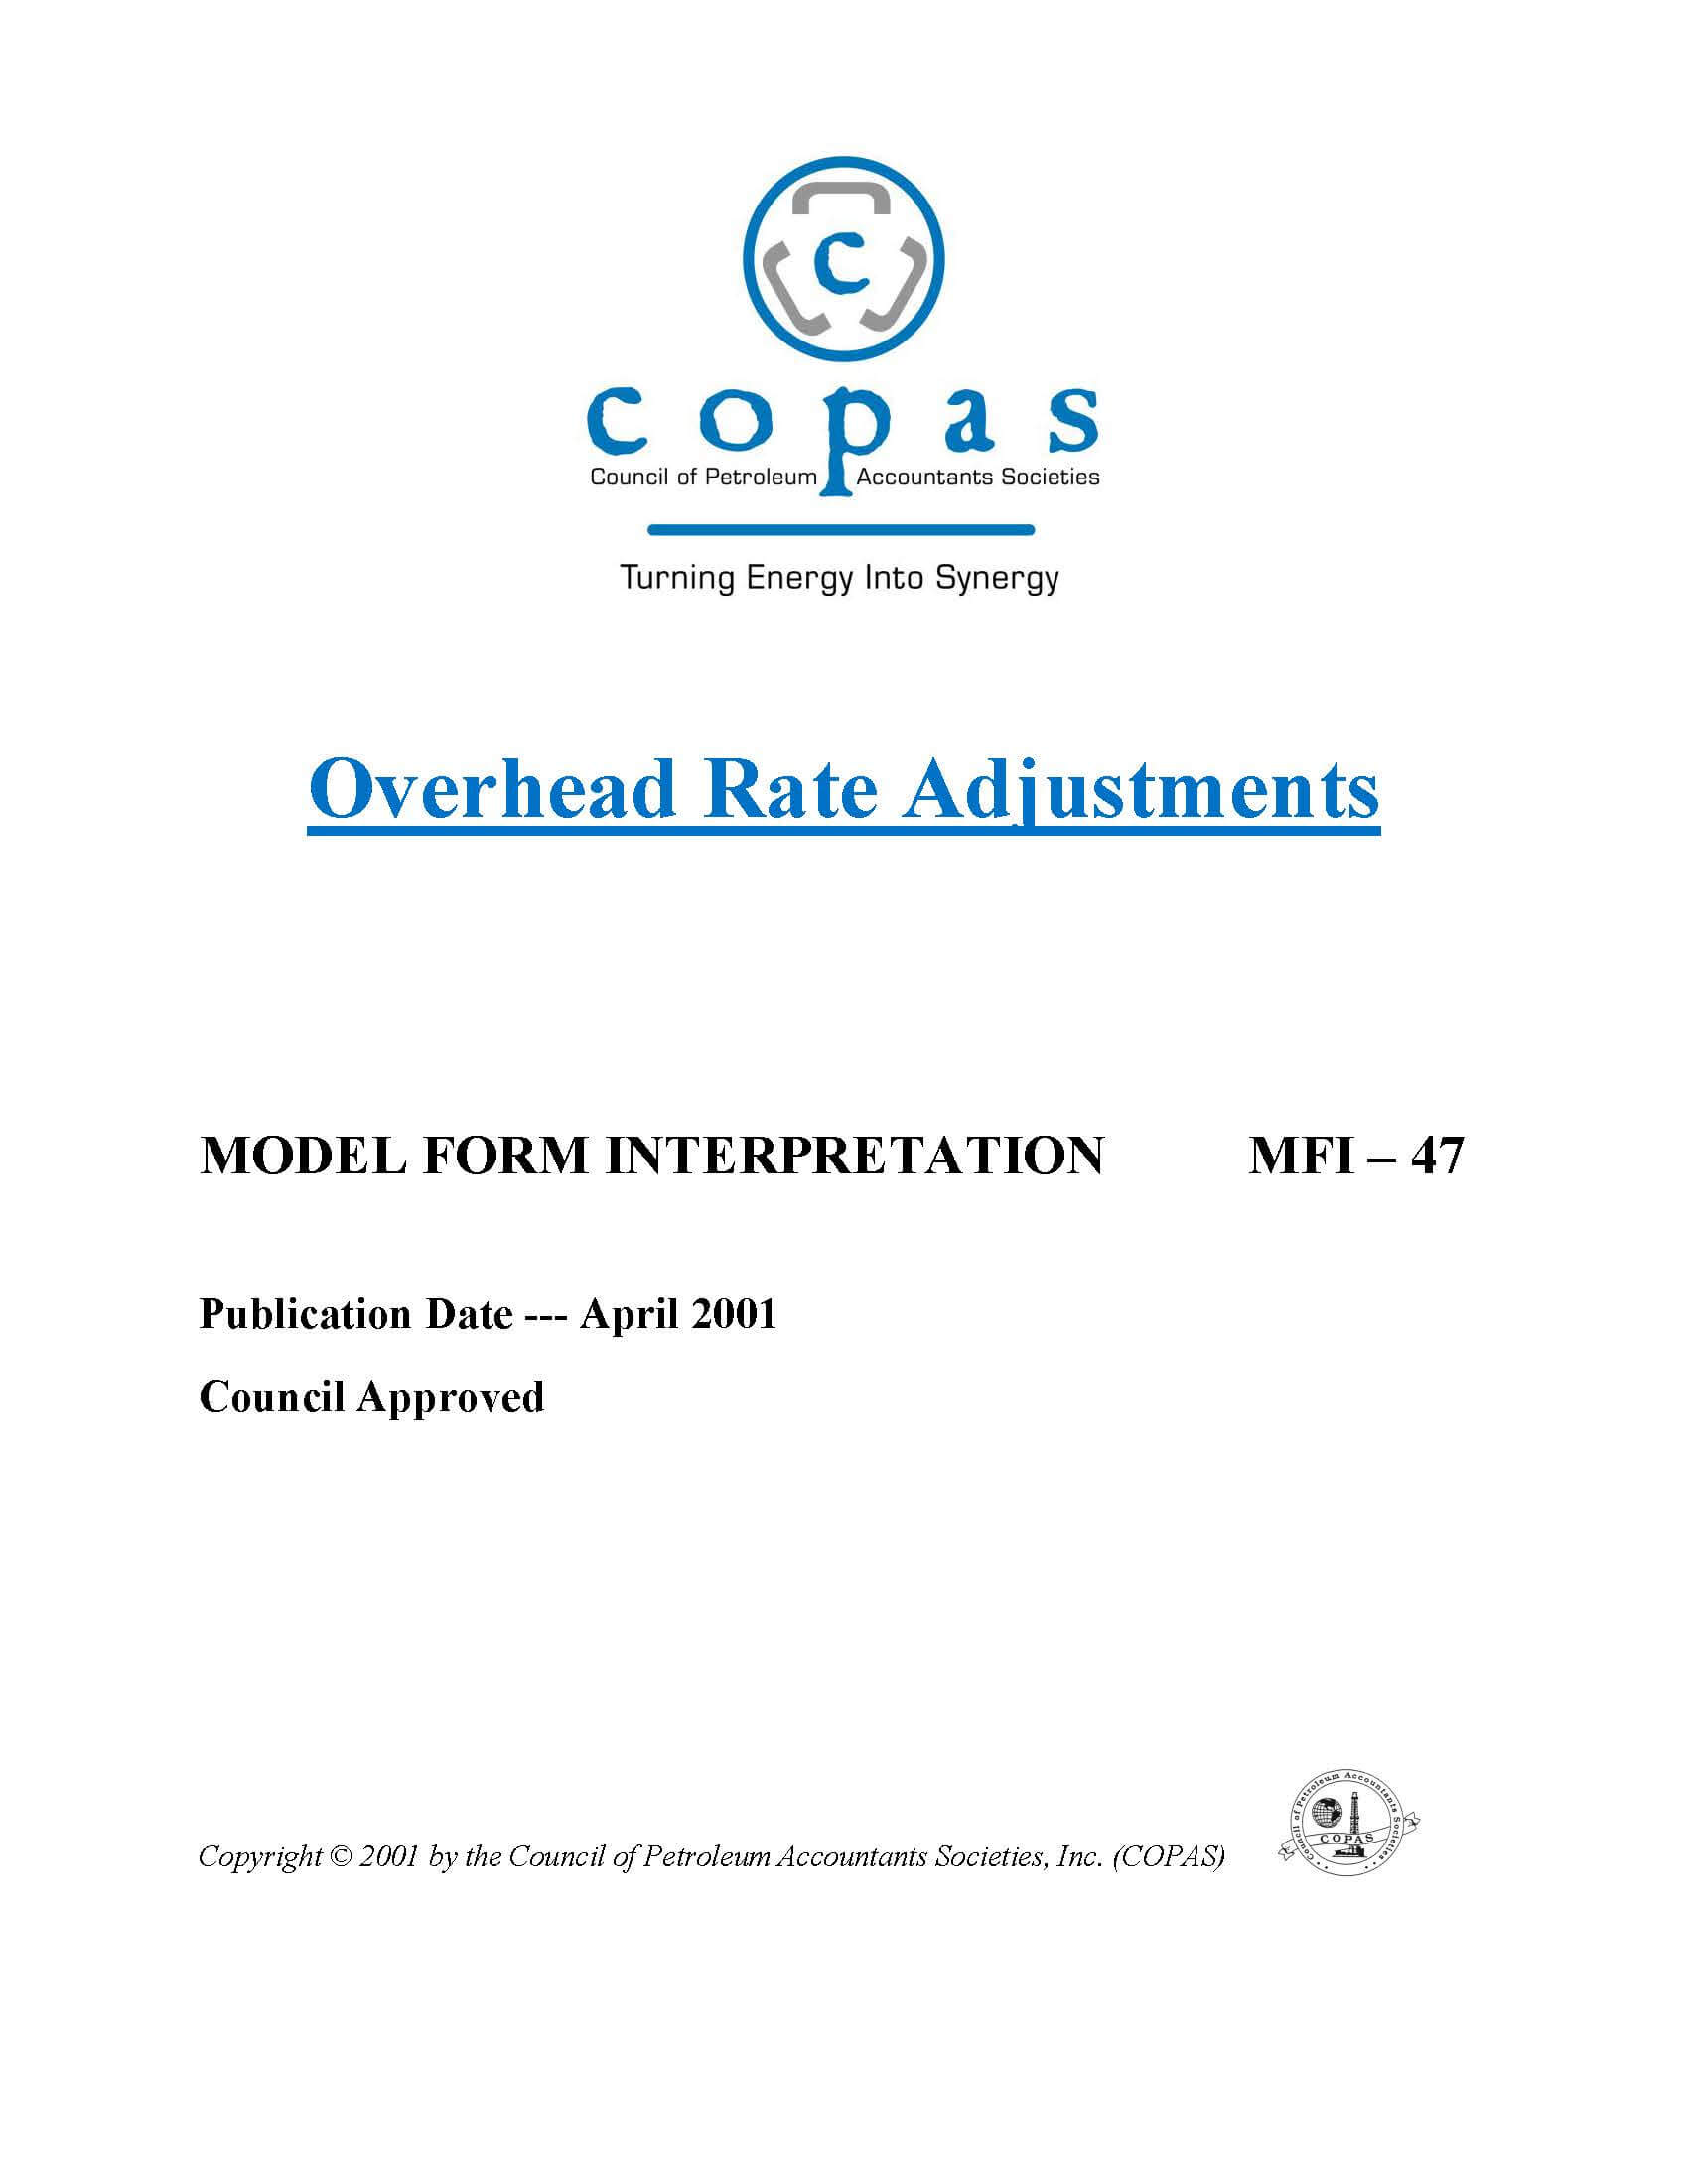 MFI-47 Overhead Rate Adjustments - products MFI 47 Overhead Rate Adjustments - Council of Petroleum Accountants Societies